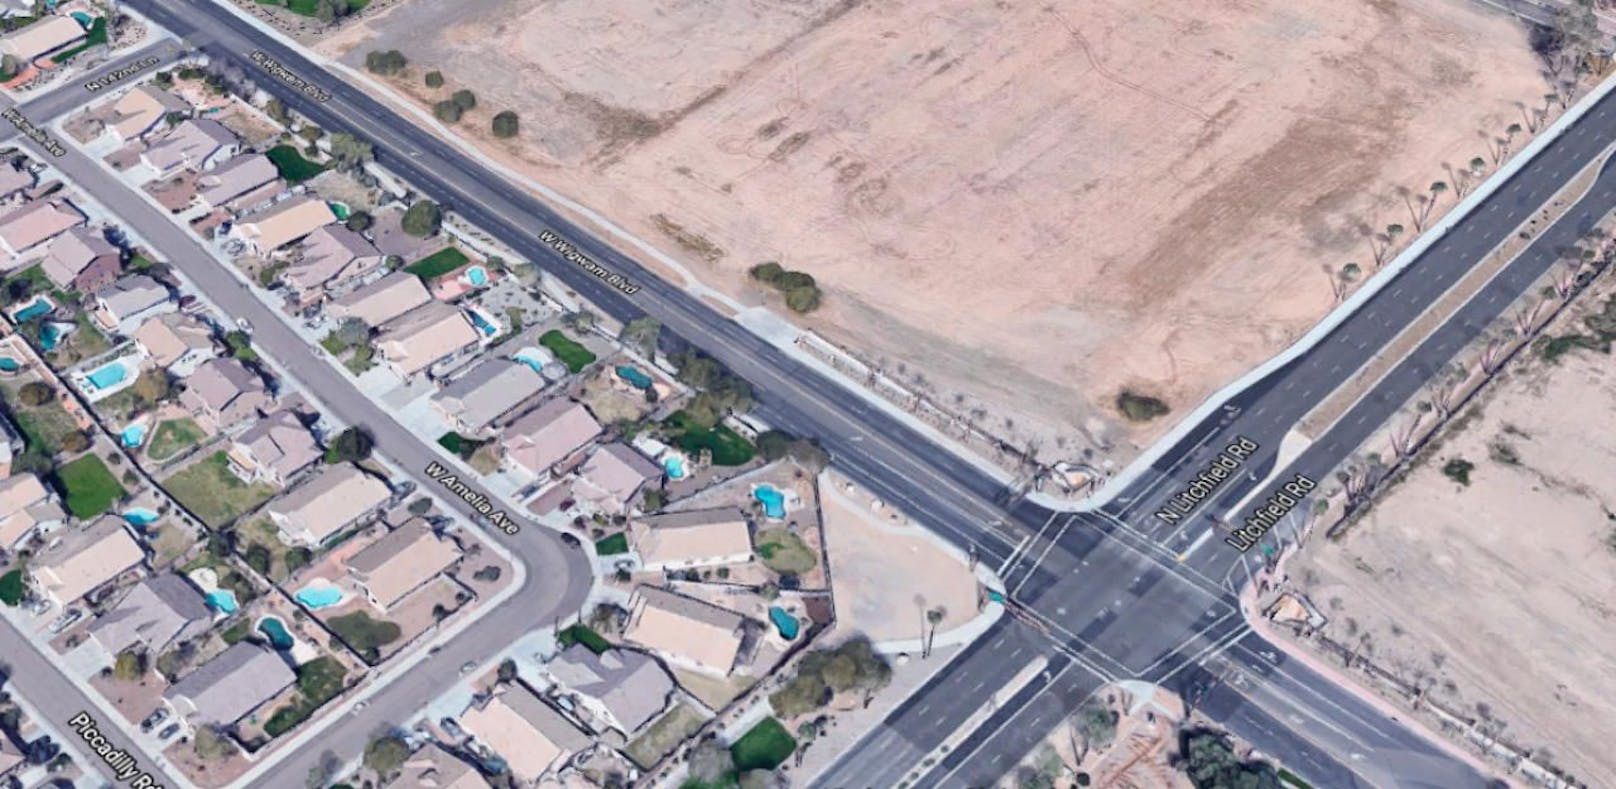 In dieser Wohngegend spielte sich das Drama ab: Die Kreuzung Litchfield Road / Wigwam Boulevard in Litchfield Park, Arizona.